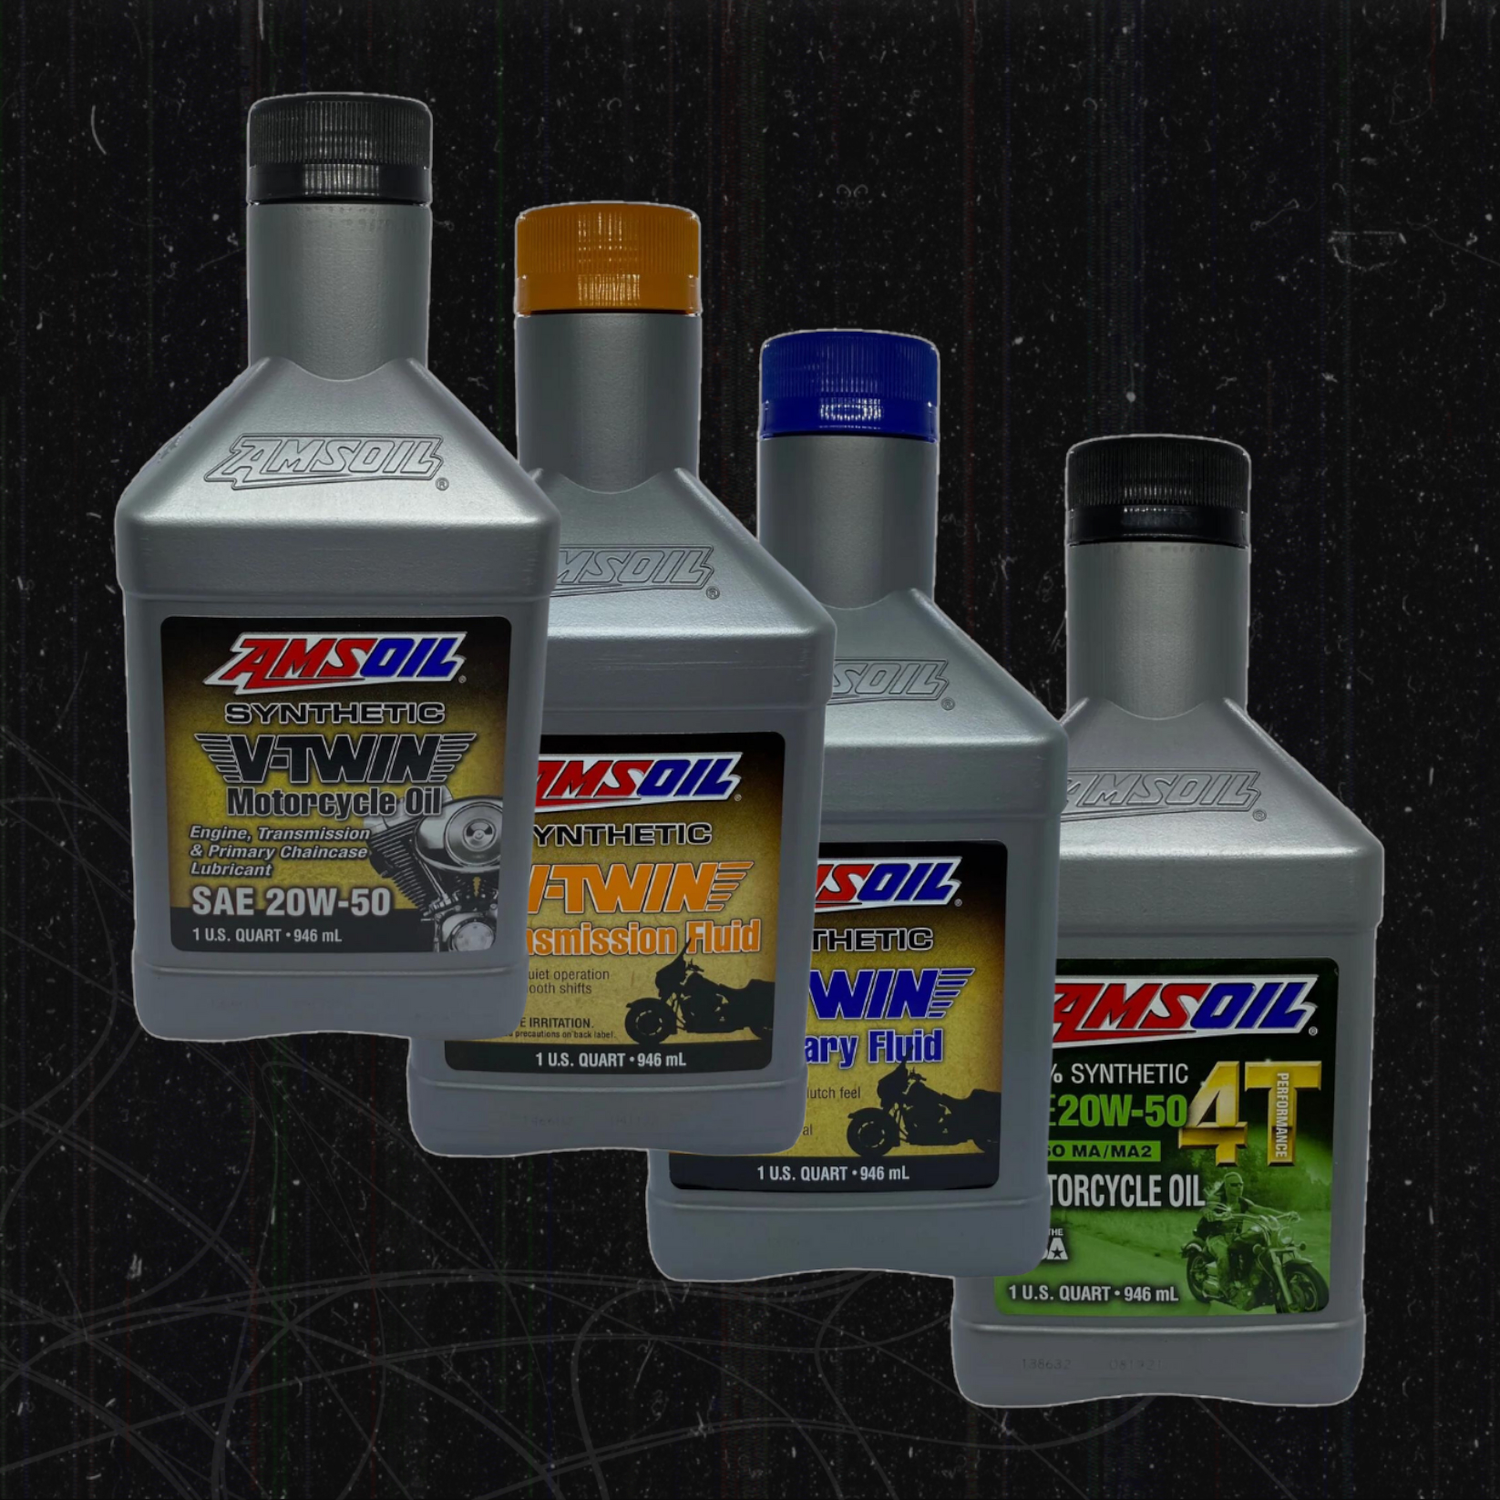 Aceites y Lubricantes Te presentamos una colección de aceites y lubricantes especialmente diseñados para las motocicletas más rudas y fuertes del mercado. Los aceites y lubricantes son como la sangre que corre por las venas de tu moto, asegurando que cada